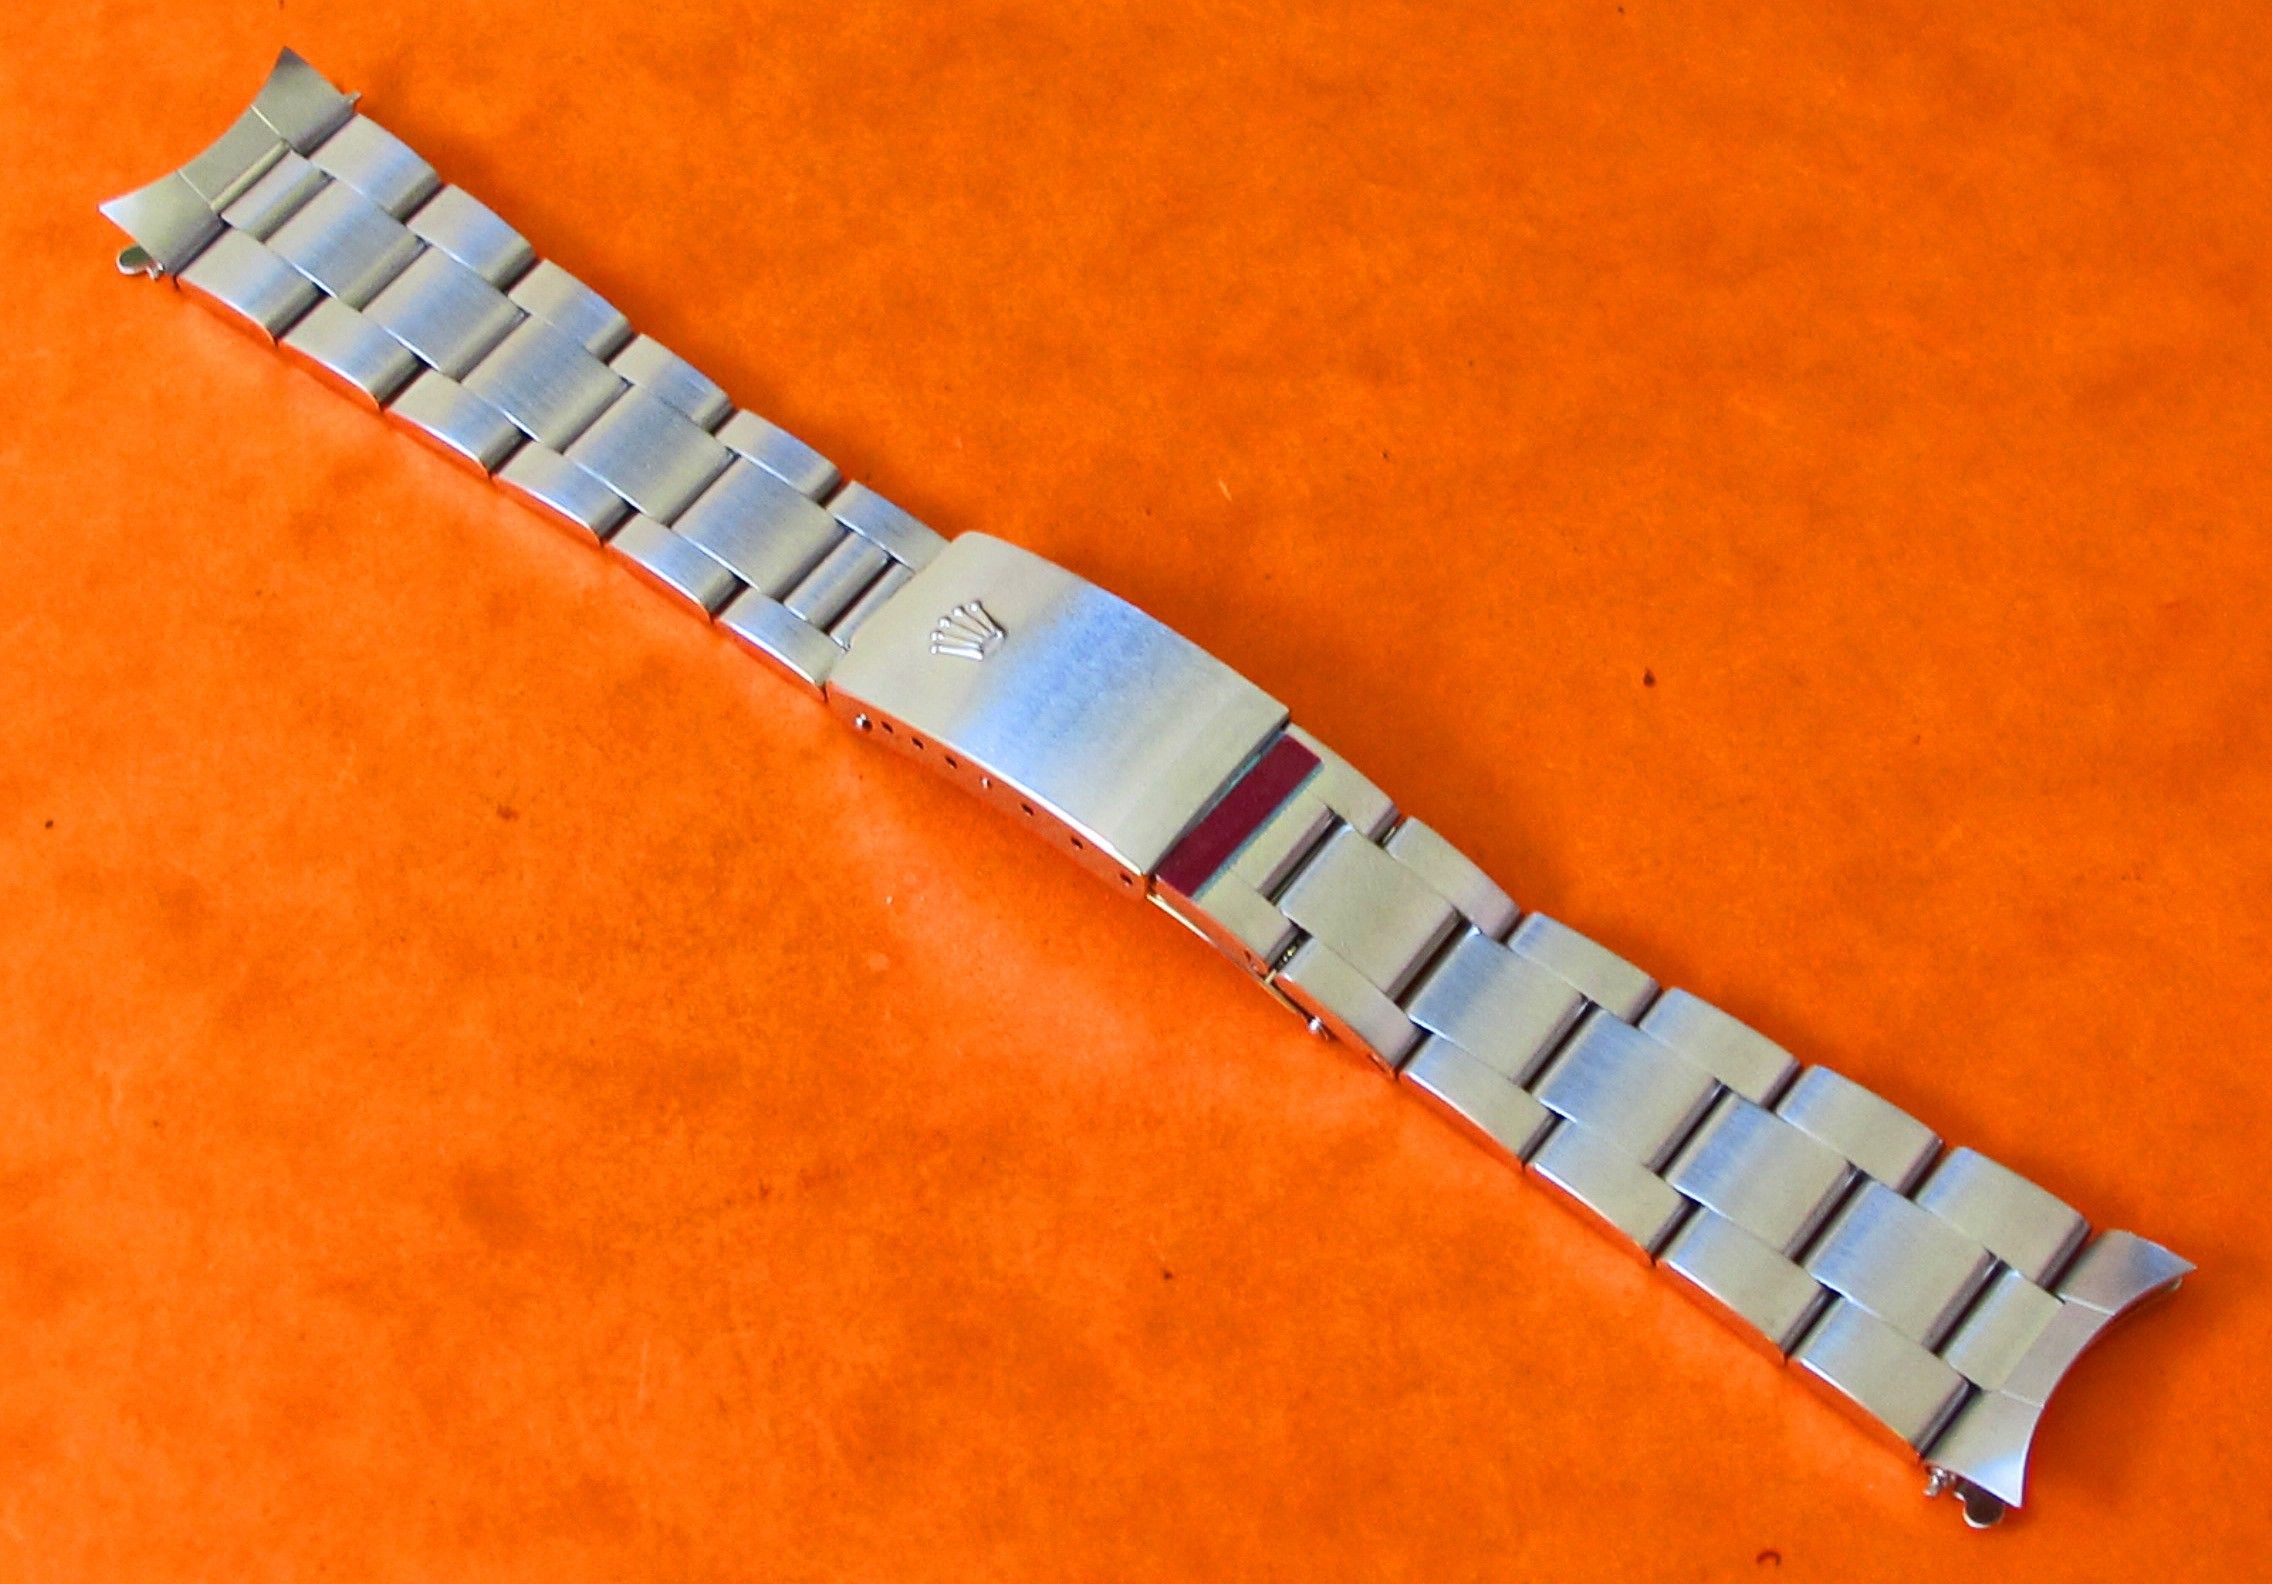 19mm rolex jubilee bracelet